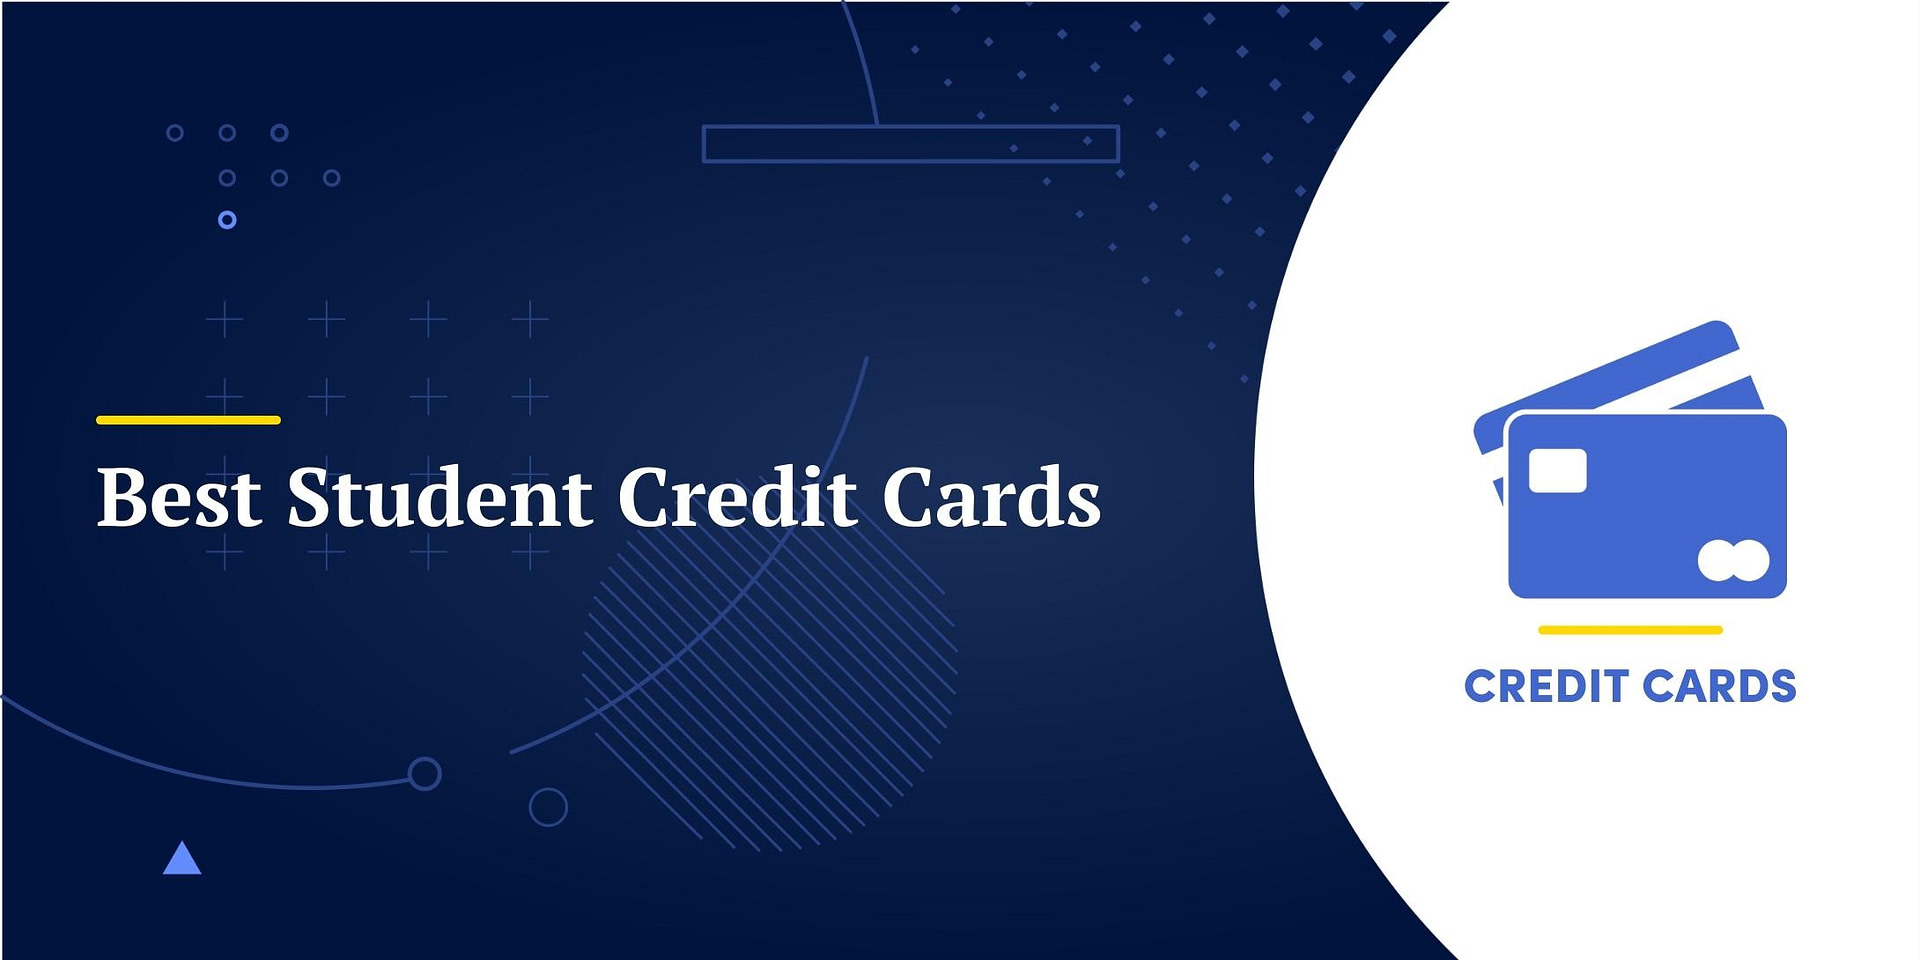 7 Best Student Credit Cards for 2023 finansdirekt24.se